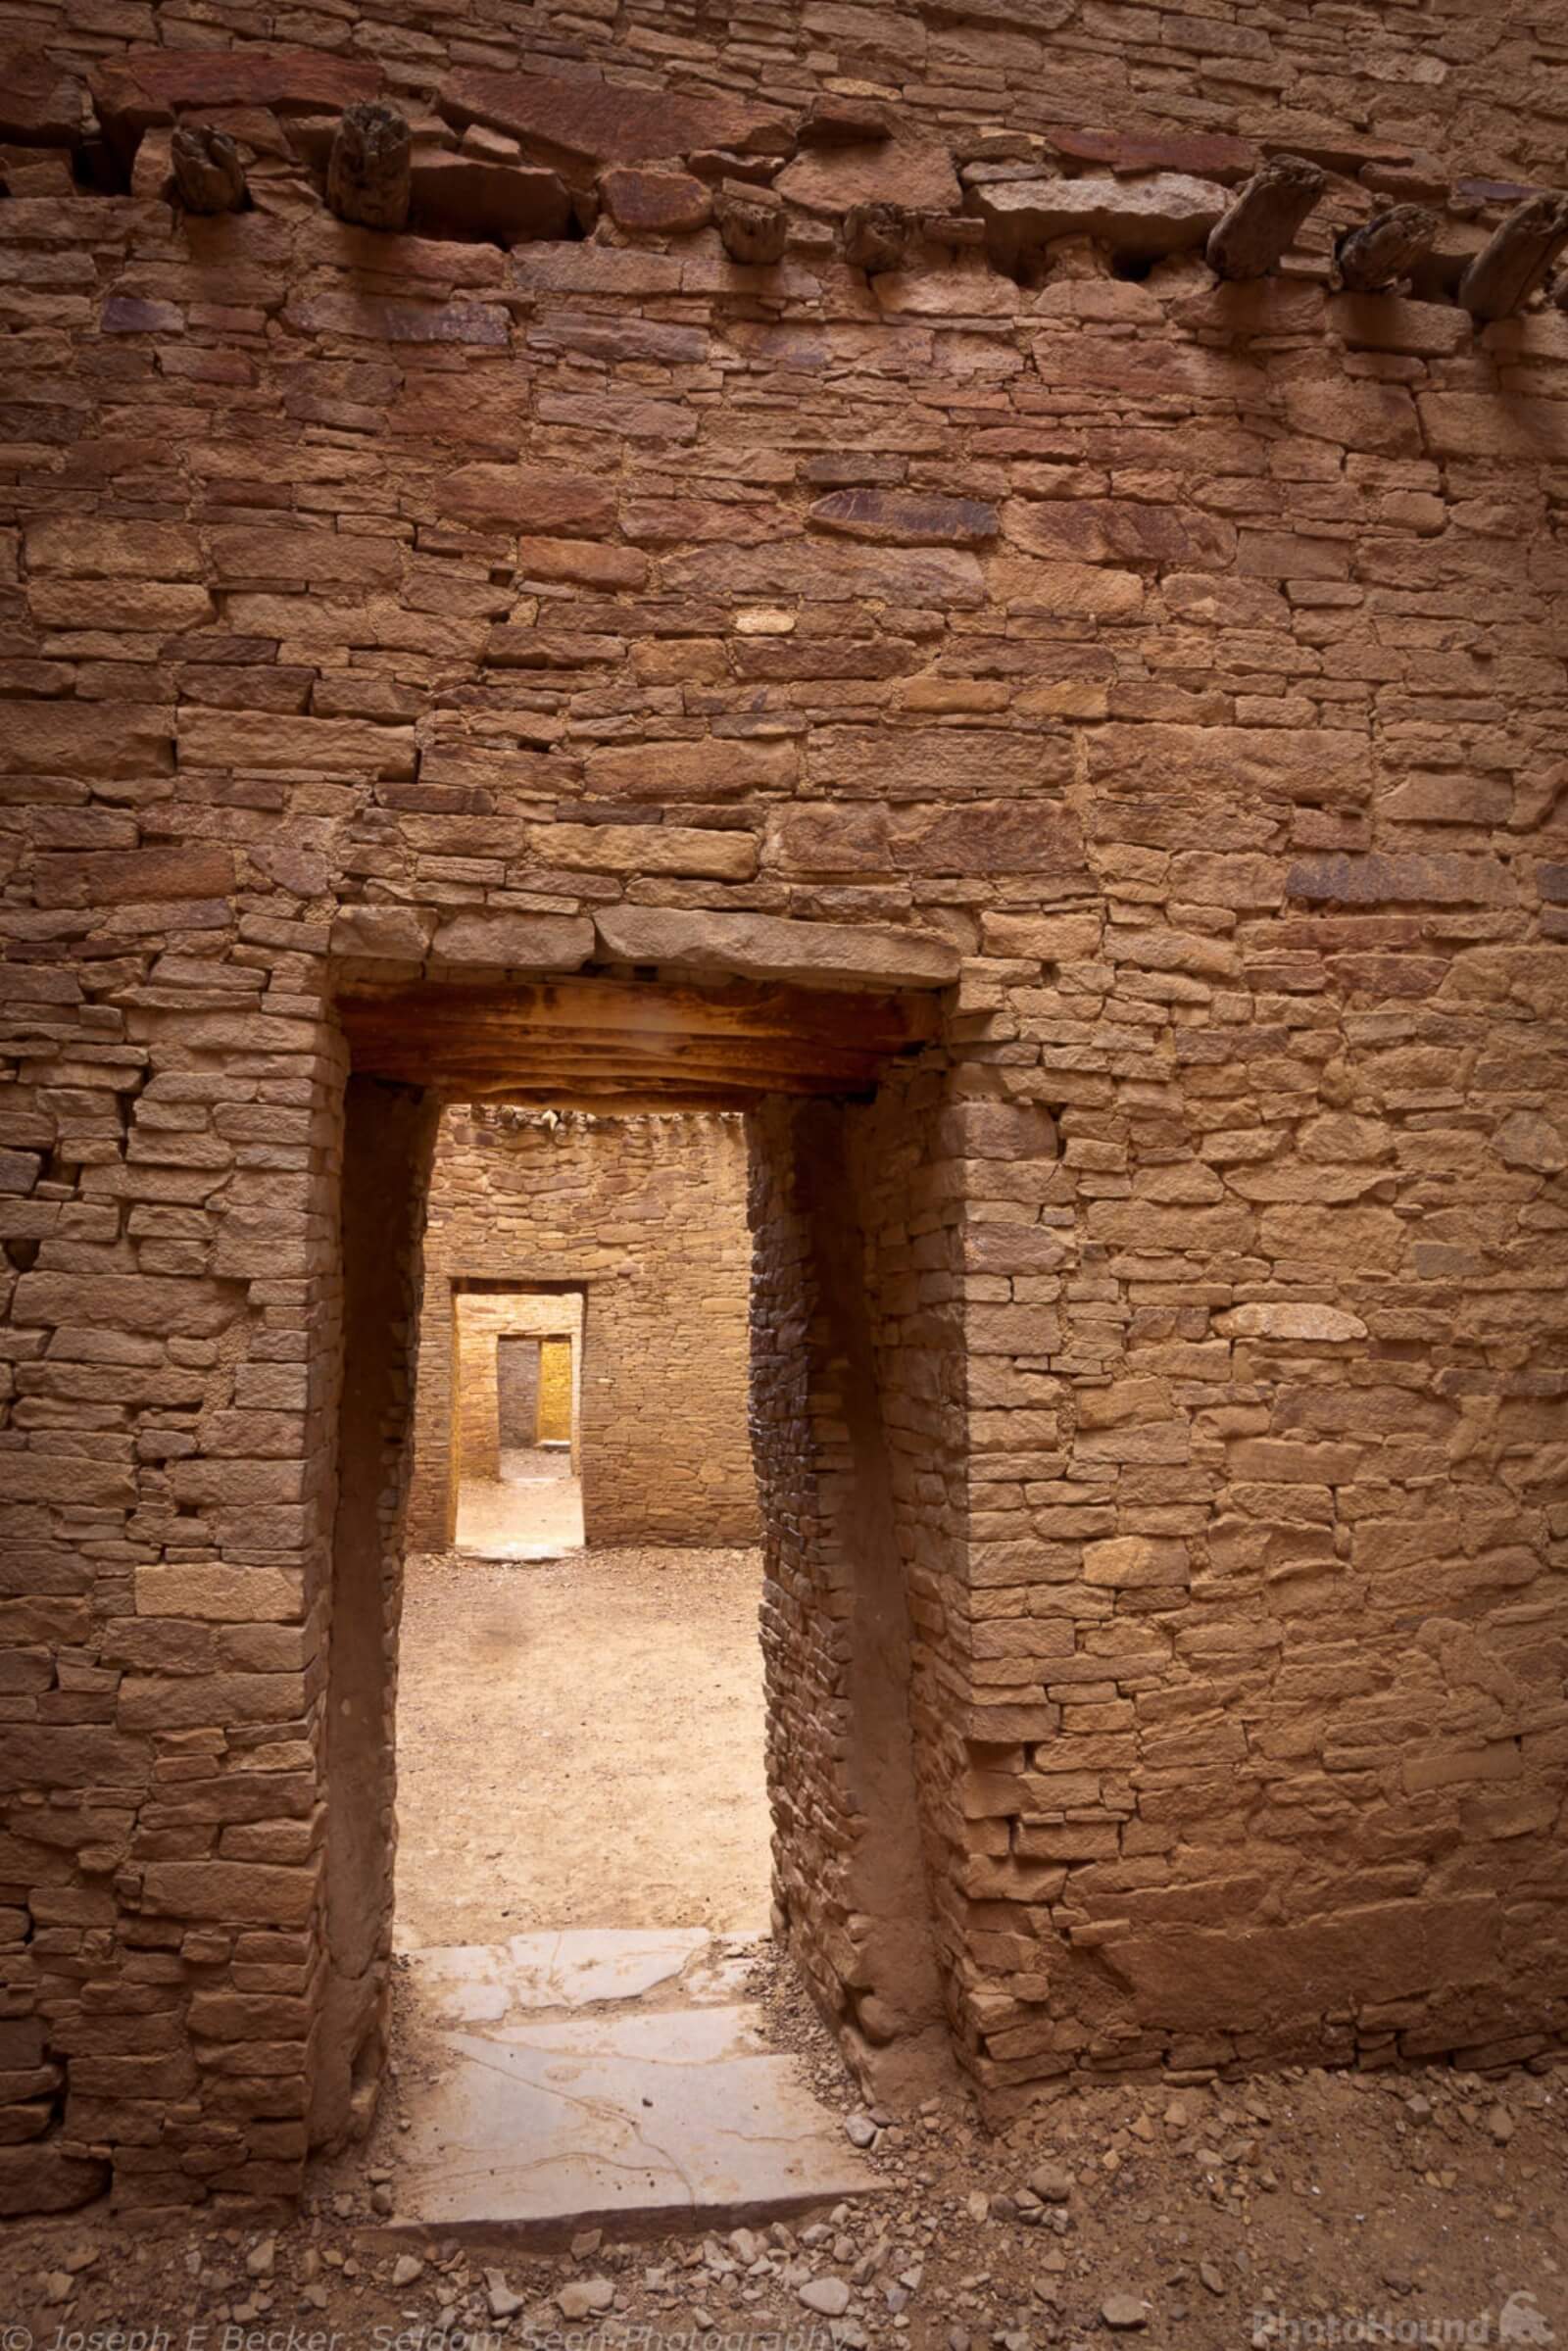 Image of Pueblo Bonito by Joe Becker